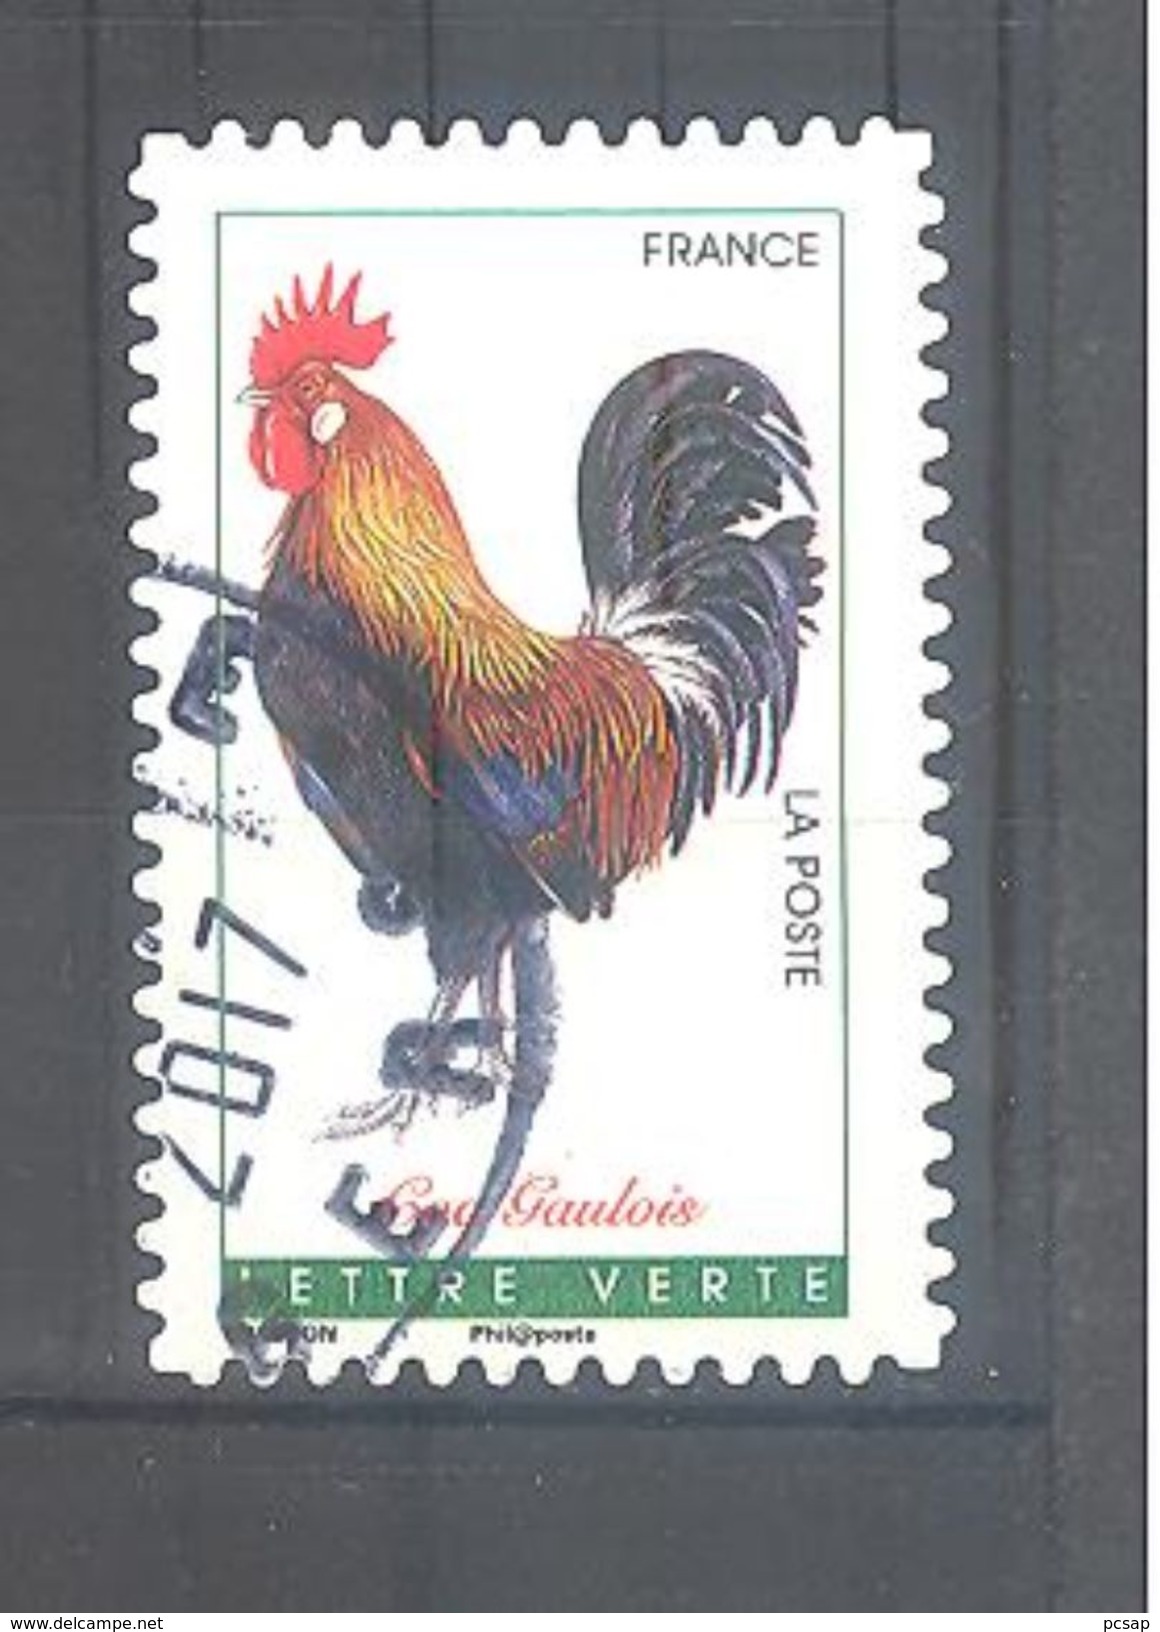 France Autoadhésif Oblitéré N°1246 (Coqs De France) (cachet Rond) - Oblitérés